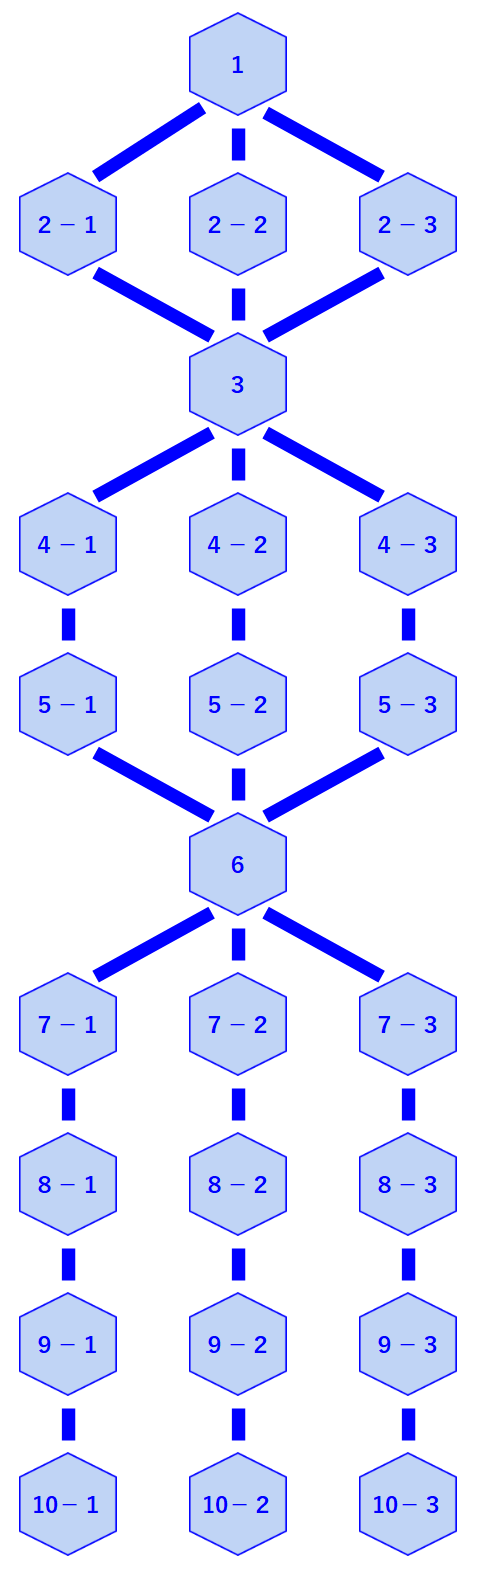 generalissimo-tree-diagram.png